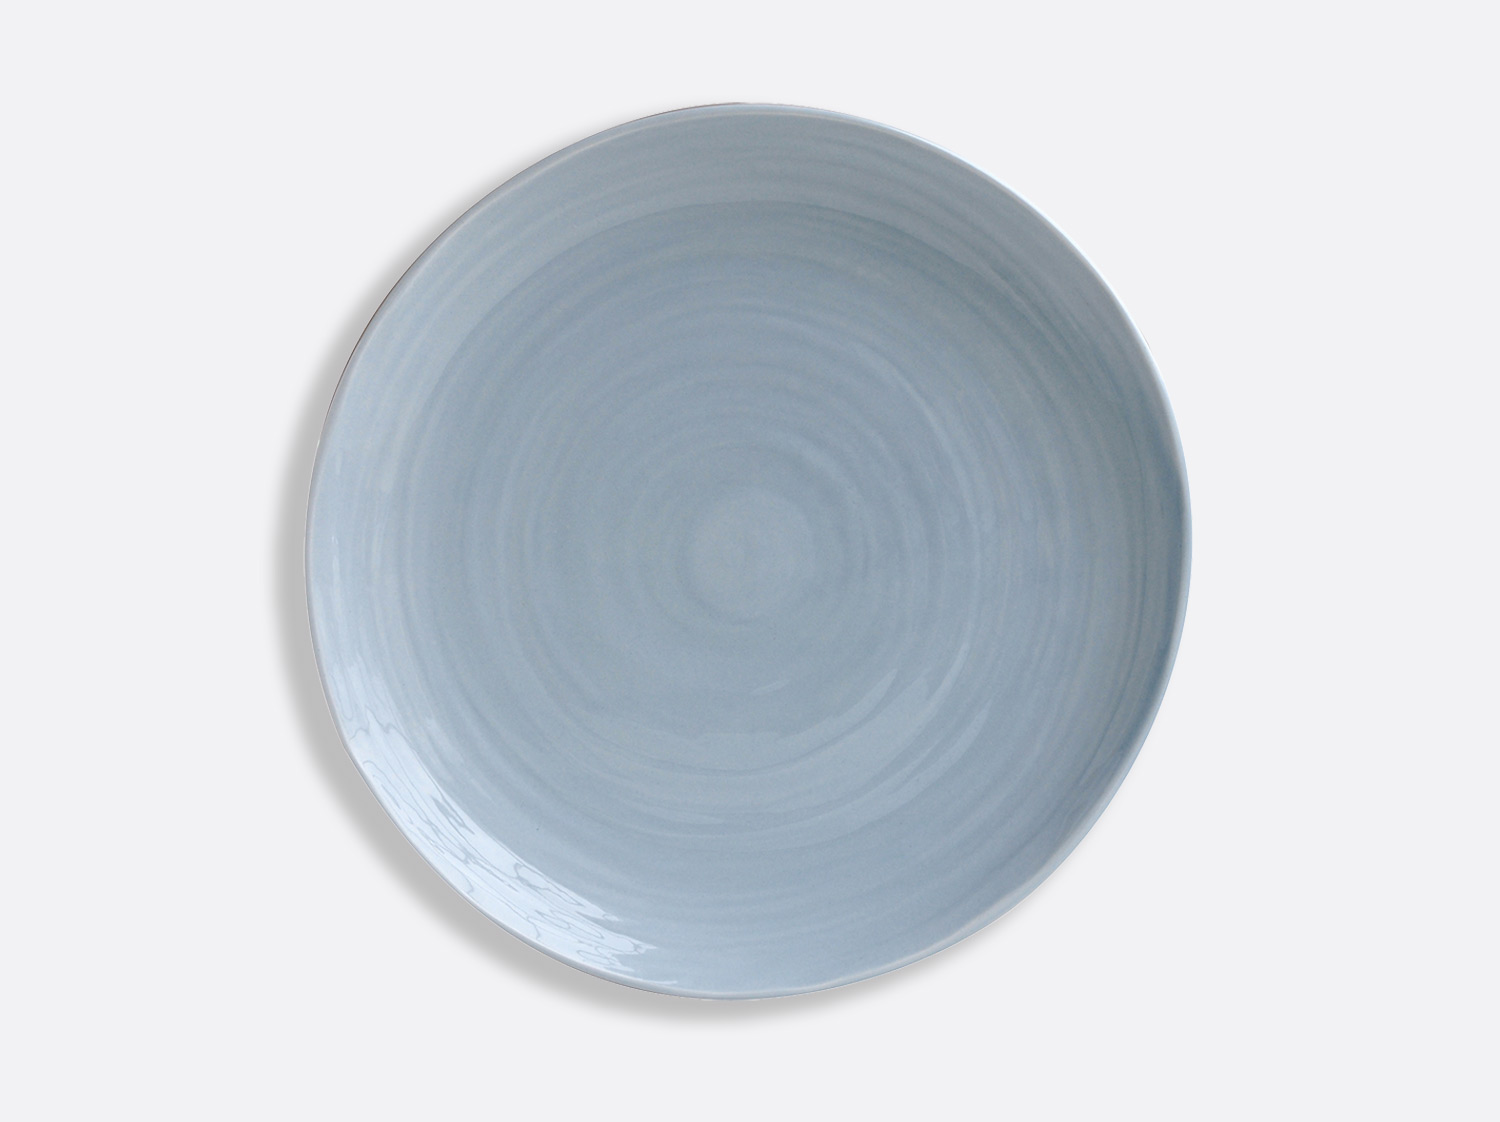 China Blue plate 27 cm of the collection Origine bleu | Bernardaud